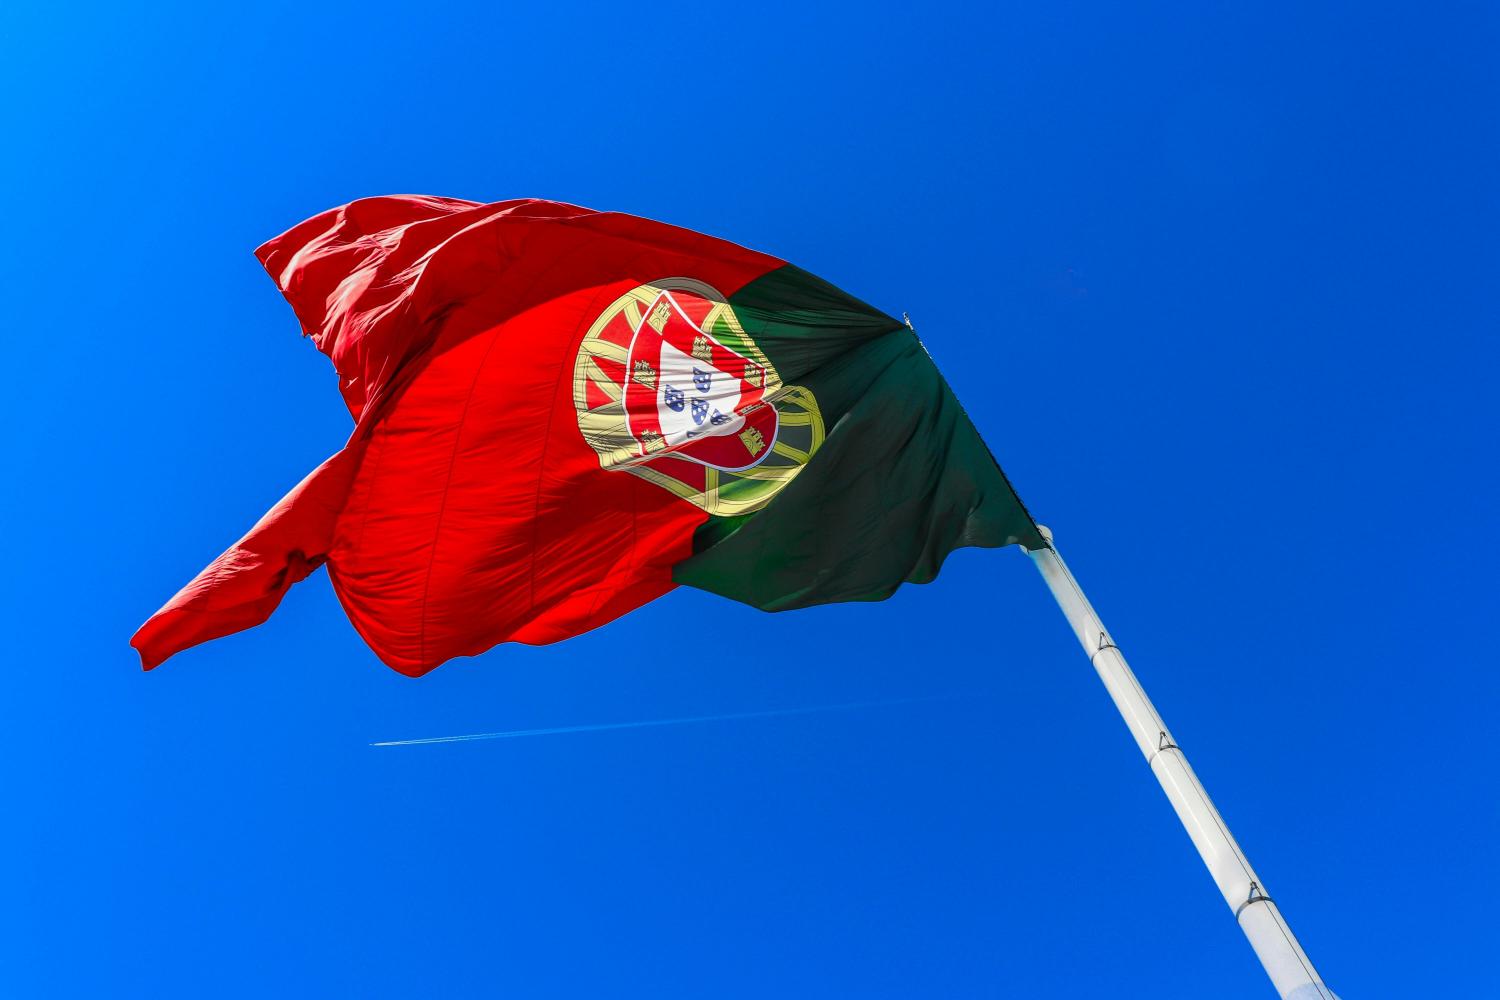 Português de Portugal está se ‘abrasileirando’? Saiba como as expressões brasileiras estão sendo incorporadas no país